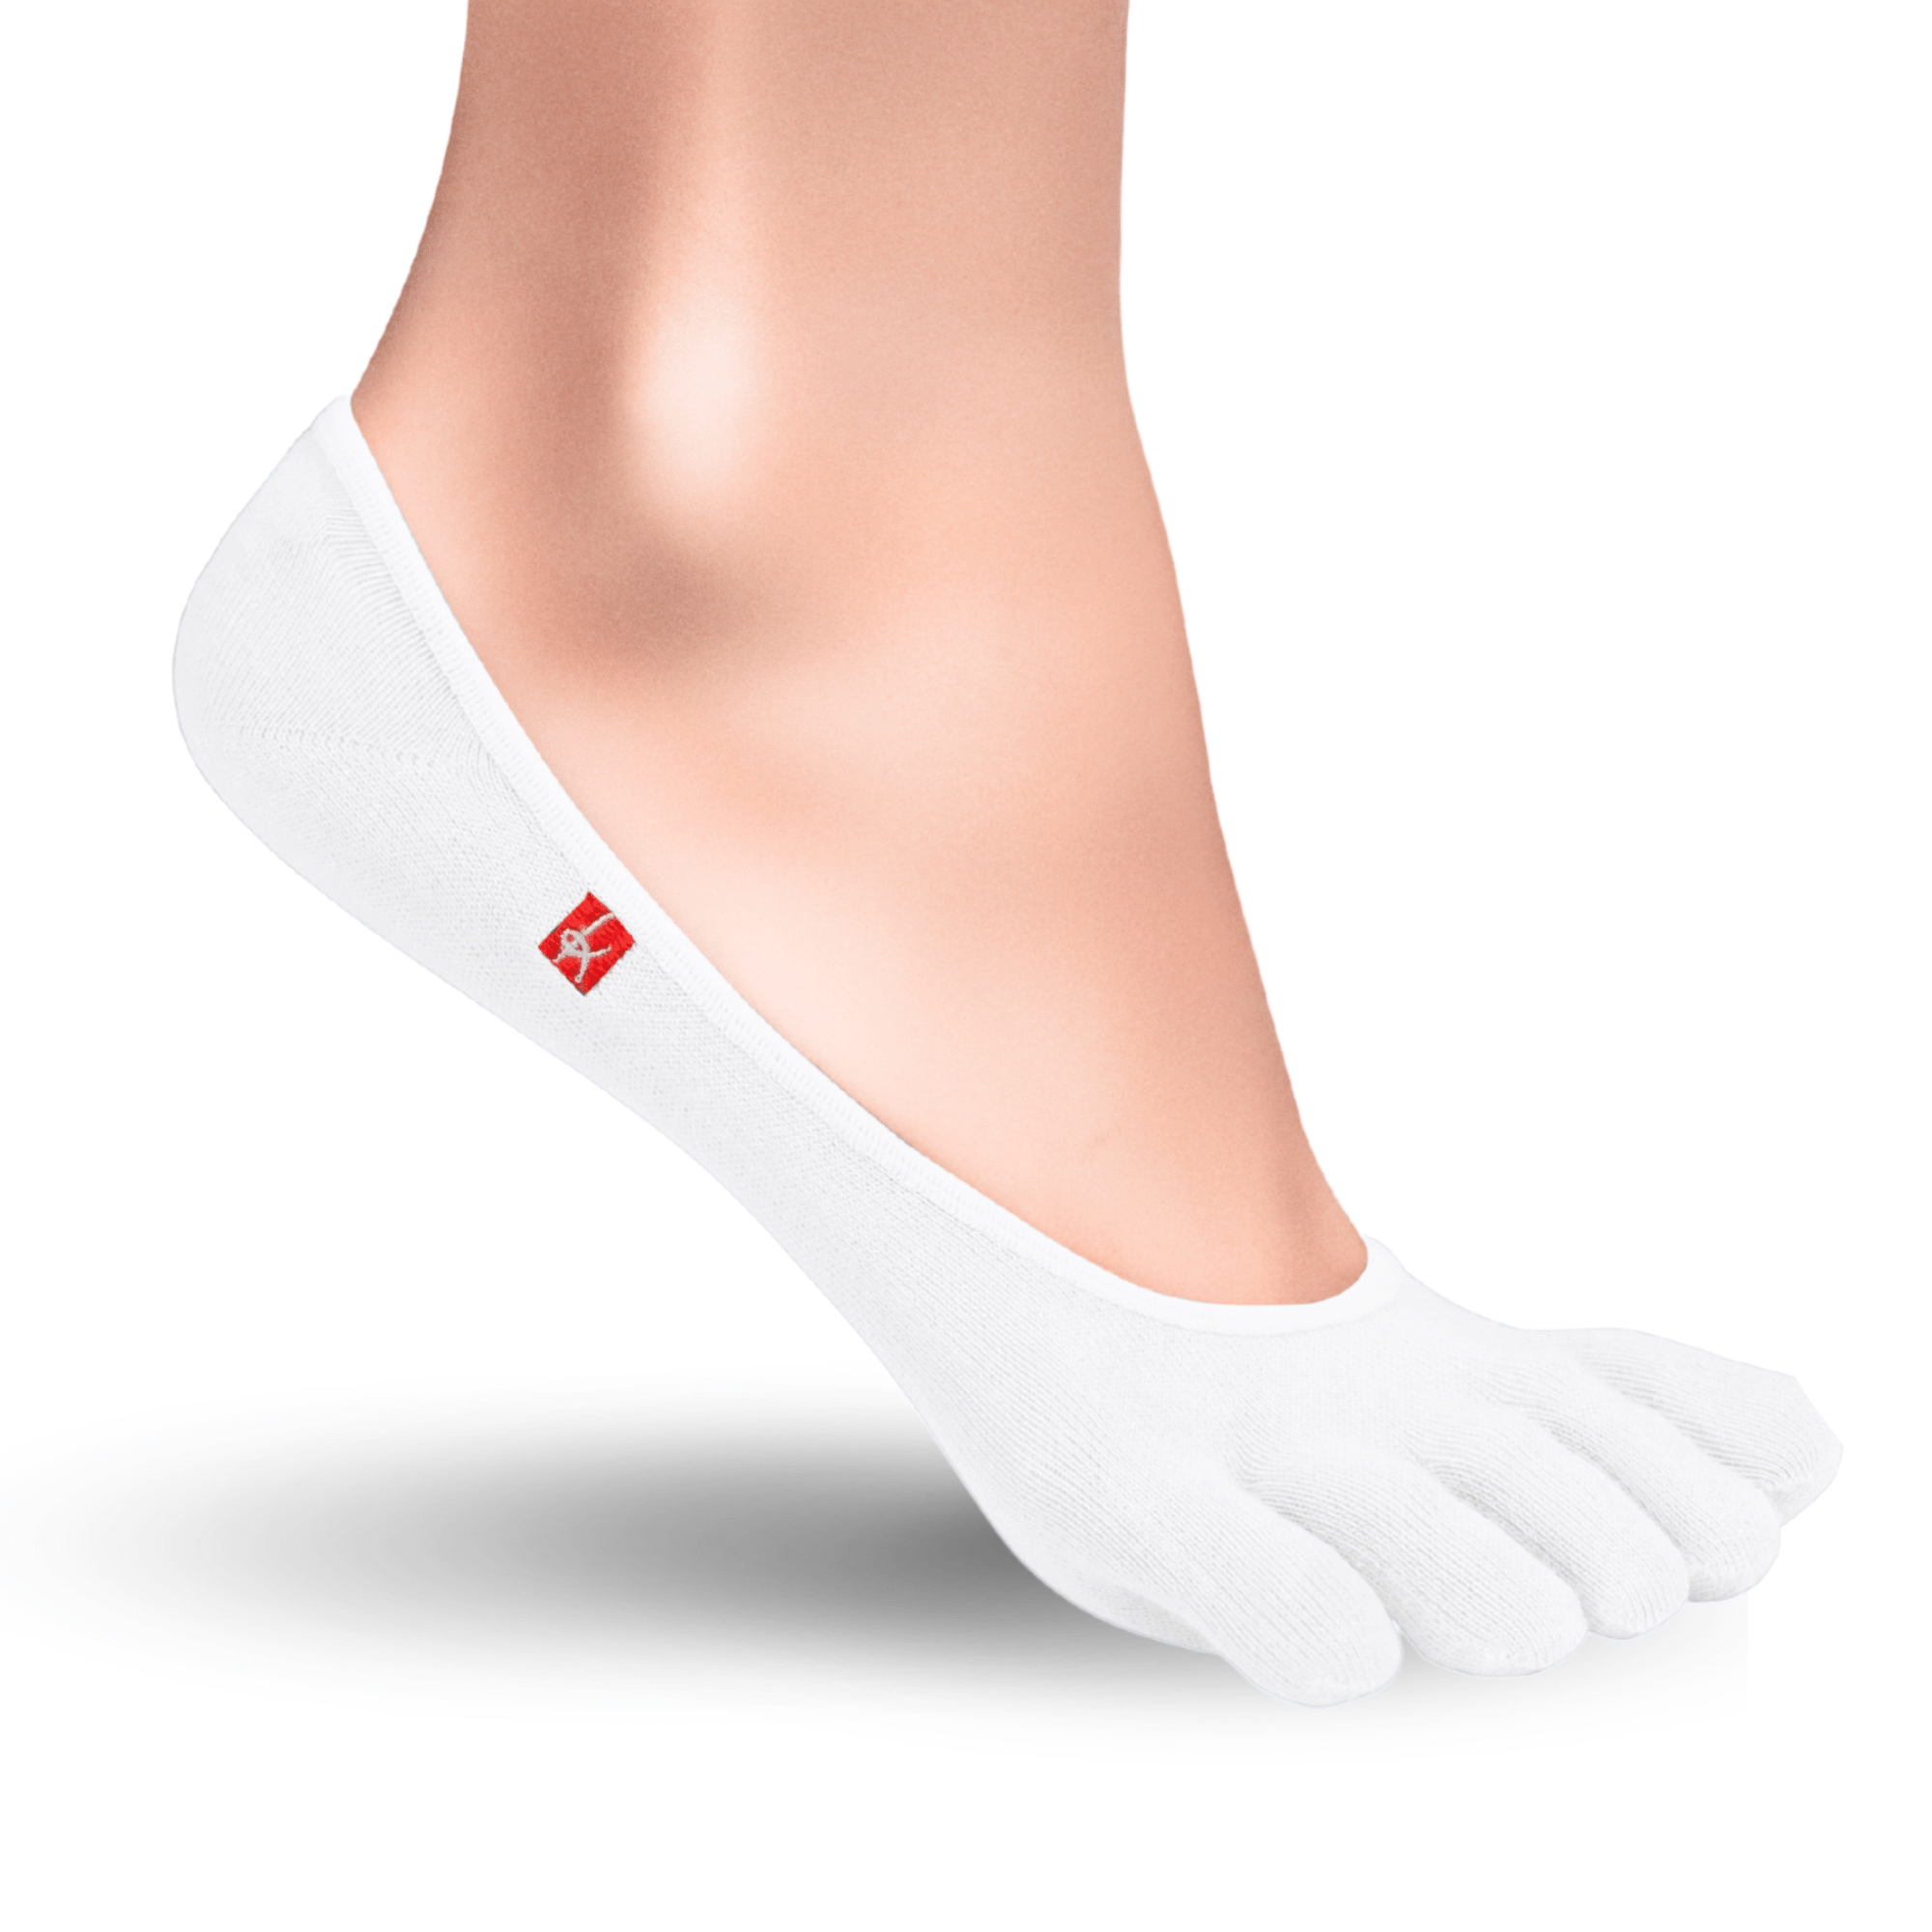 Knitido Zero Coolmax chaussons orteils femme chaussettes à orteils en blanc